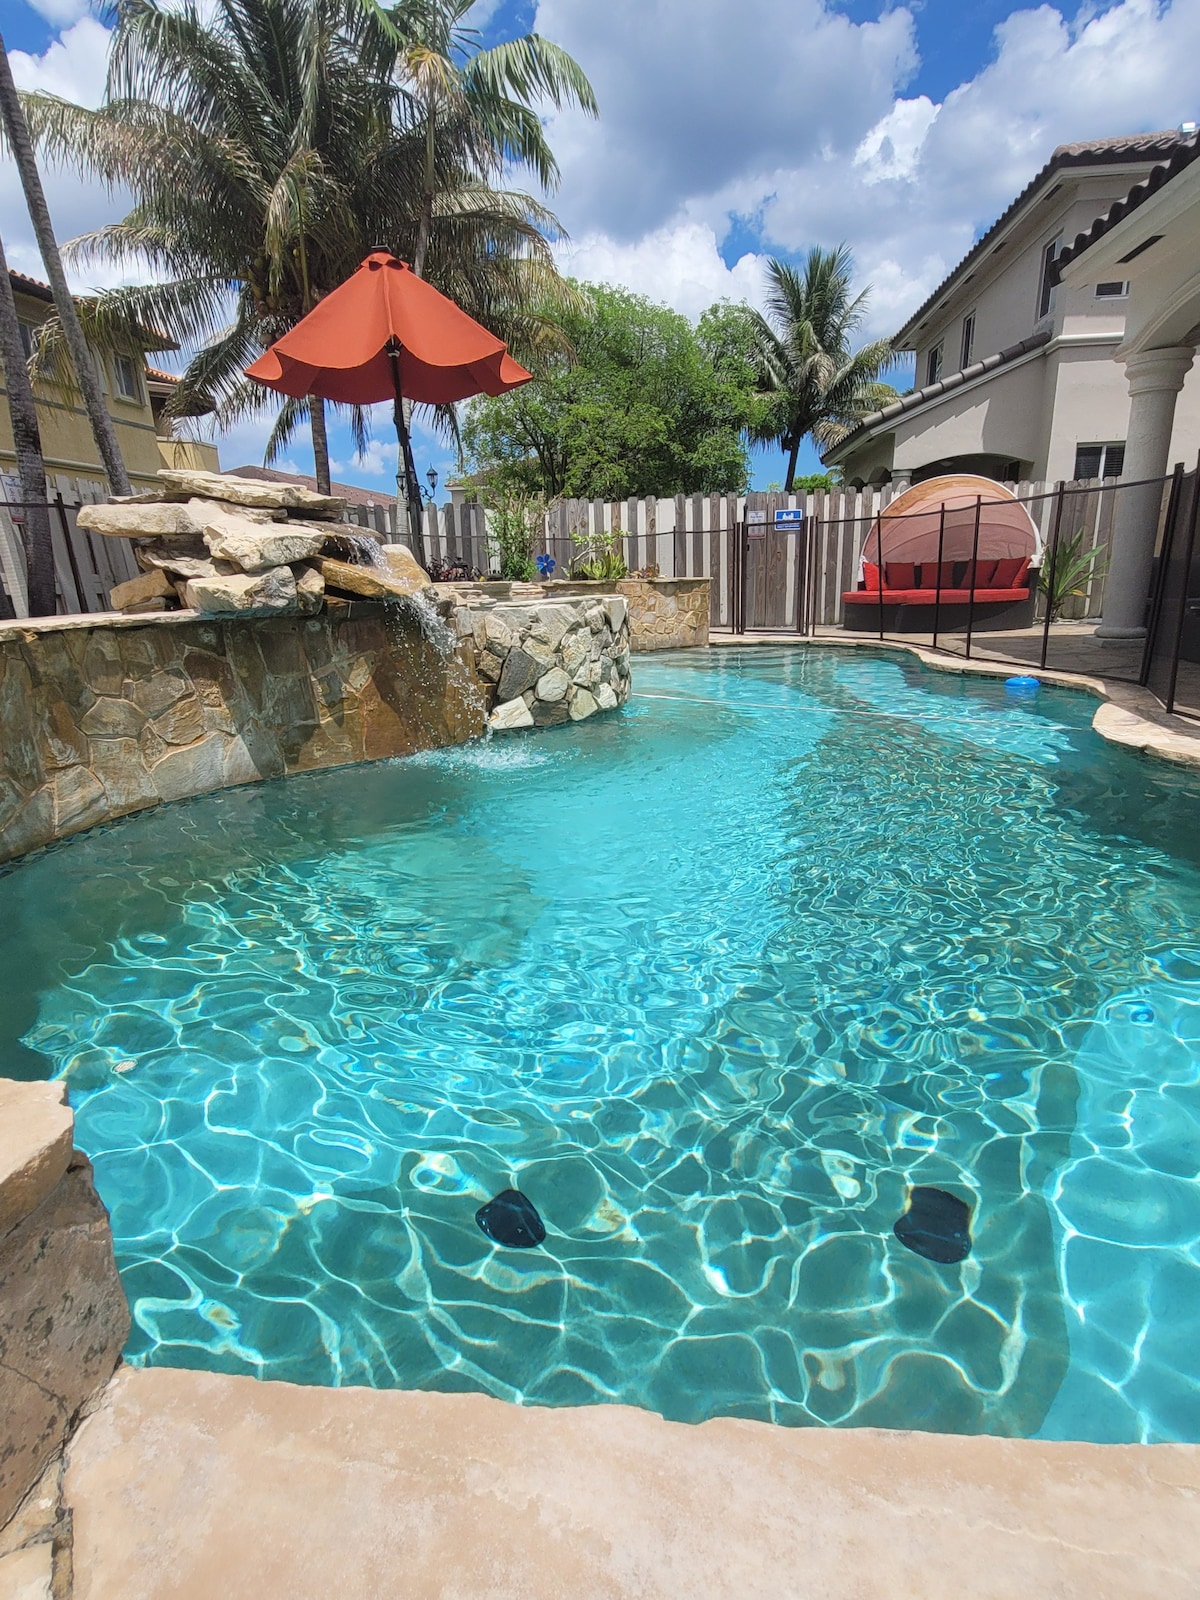 Luxury Mansion Miami /pool/jacuzzi/foosball table